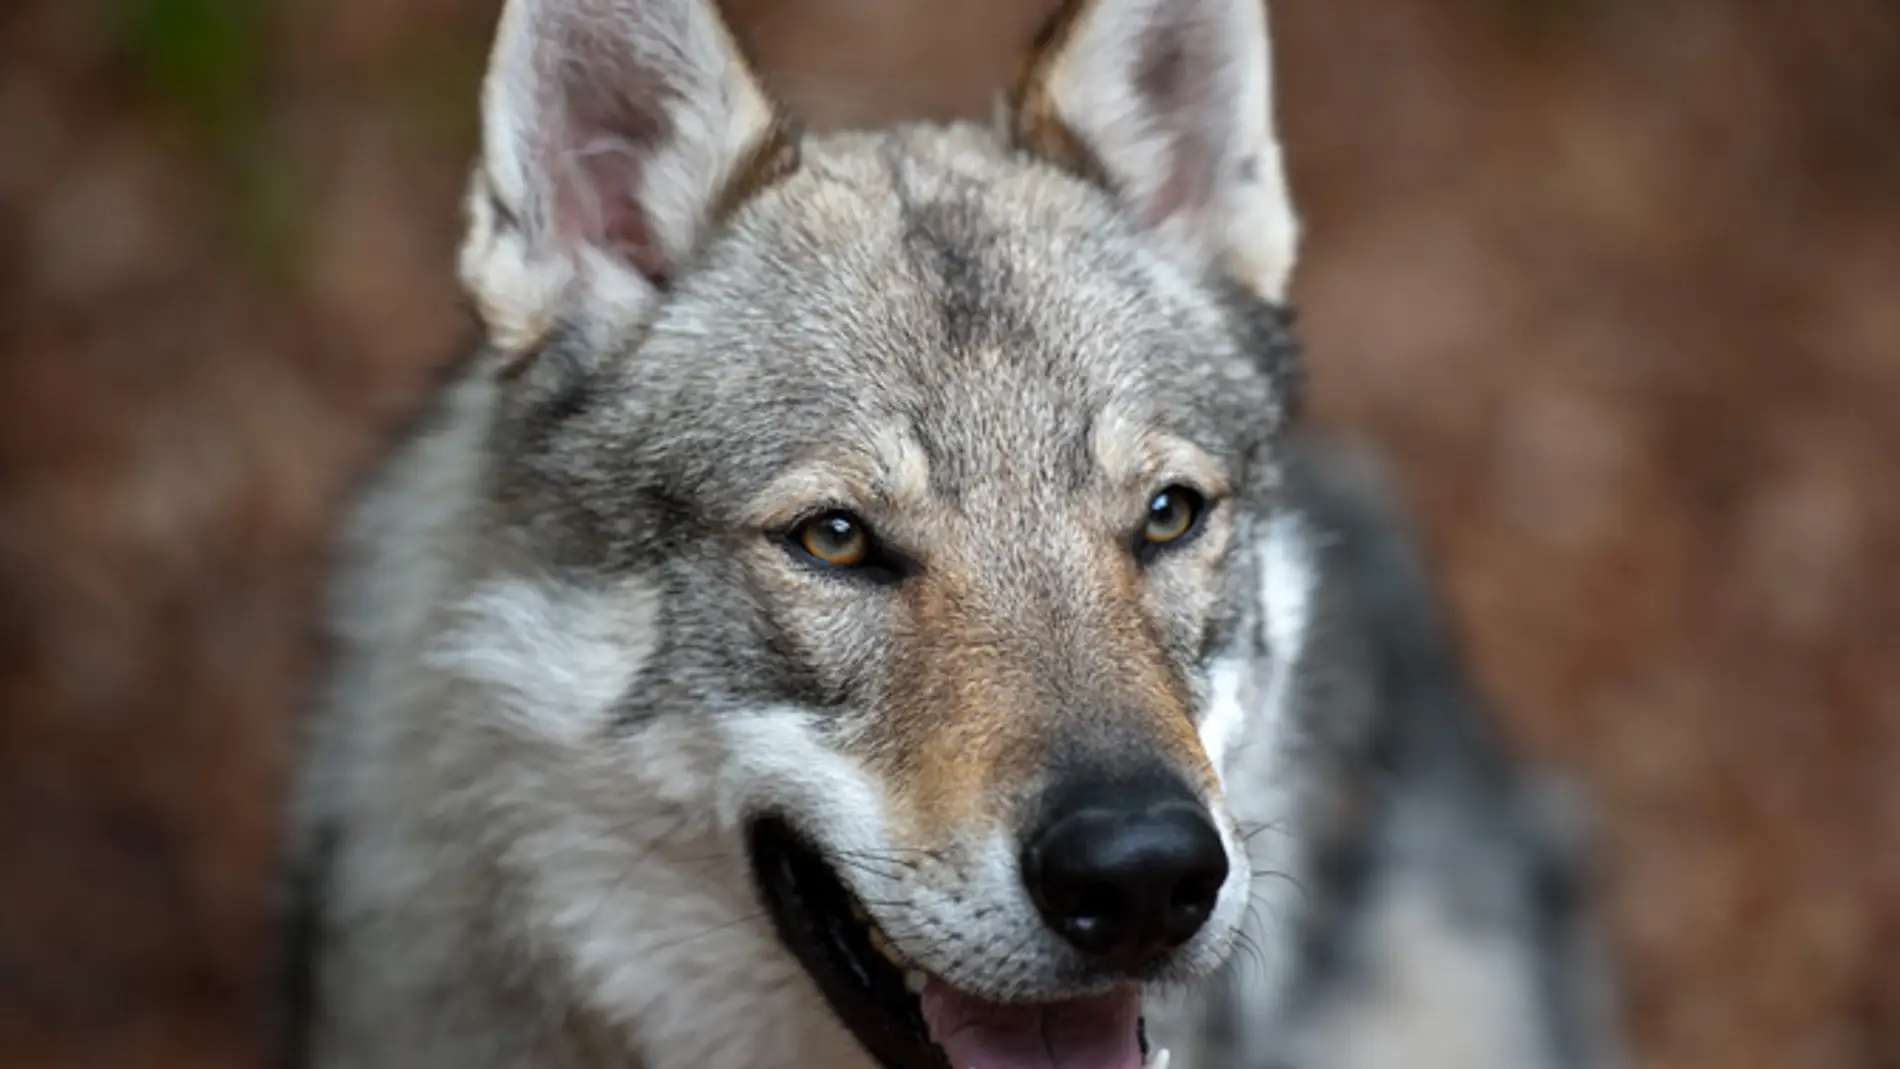 Perro lobo checoslovaco, un híbrido entre pastor alemán y lobo euroasiático